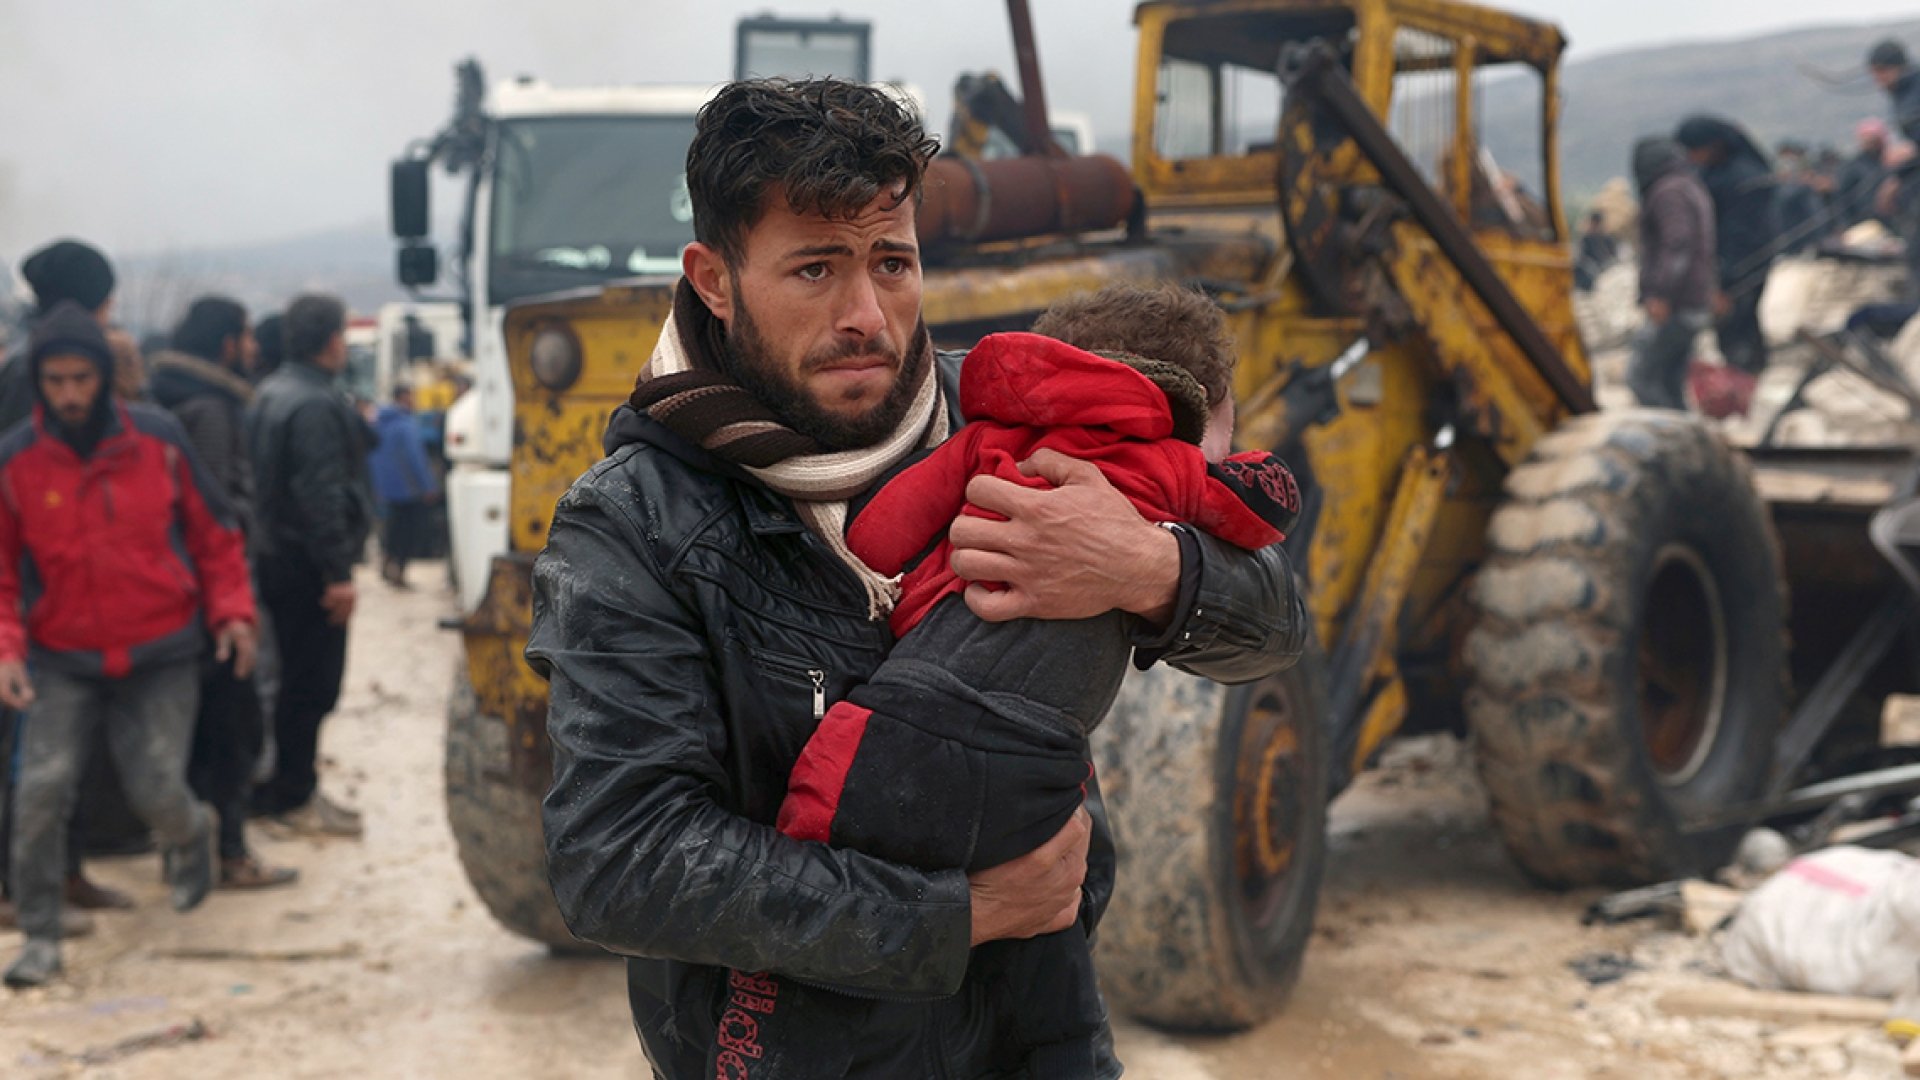 Nothilfe für Erdbebenopfer in Syrien